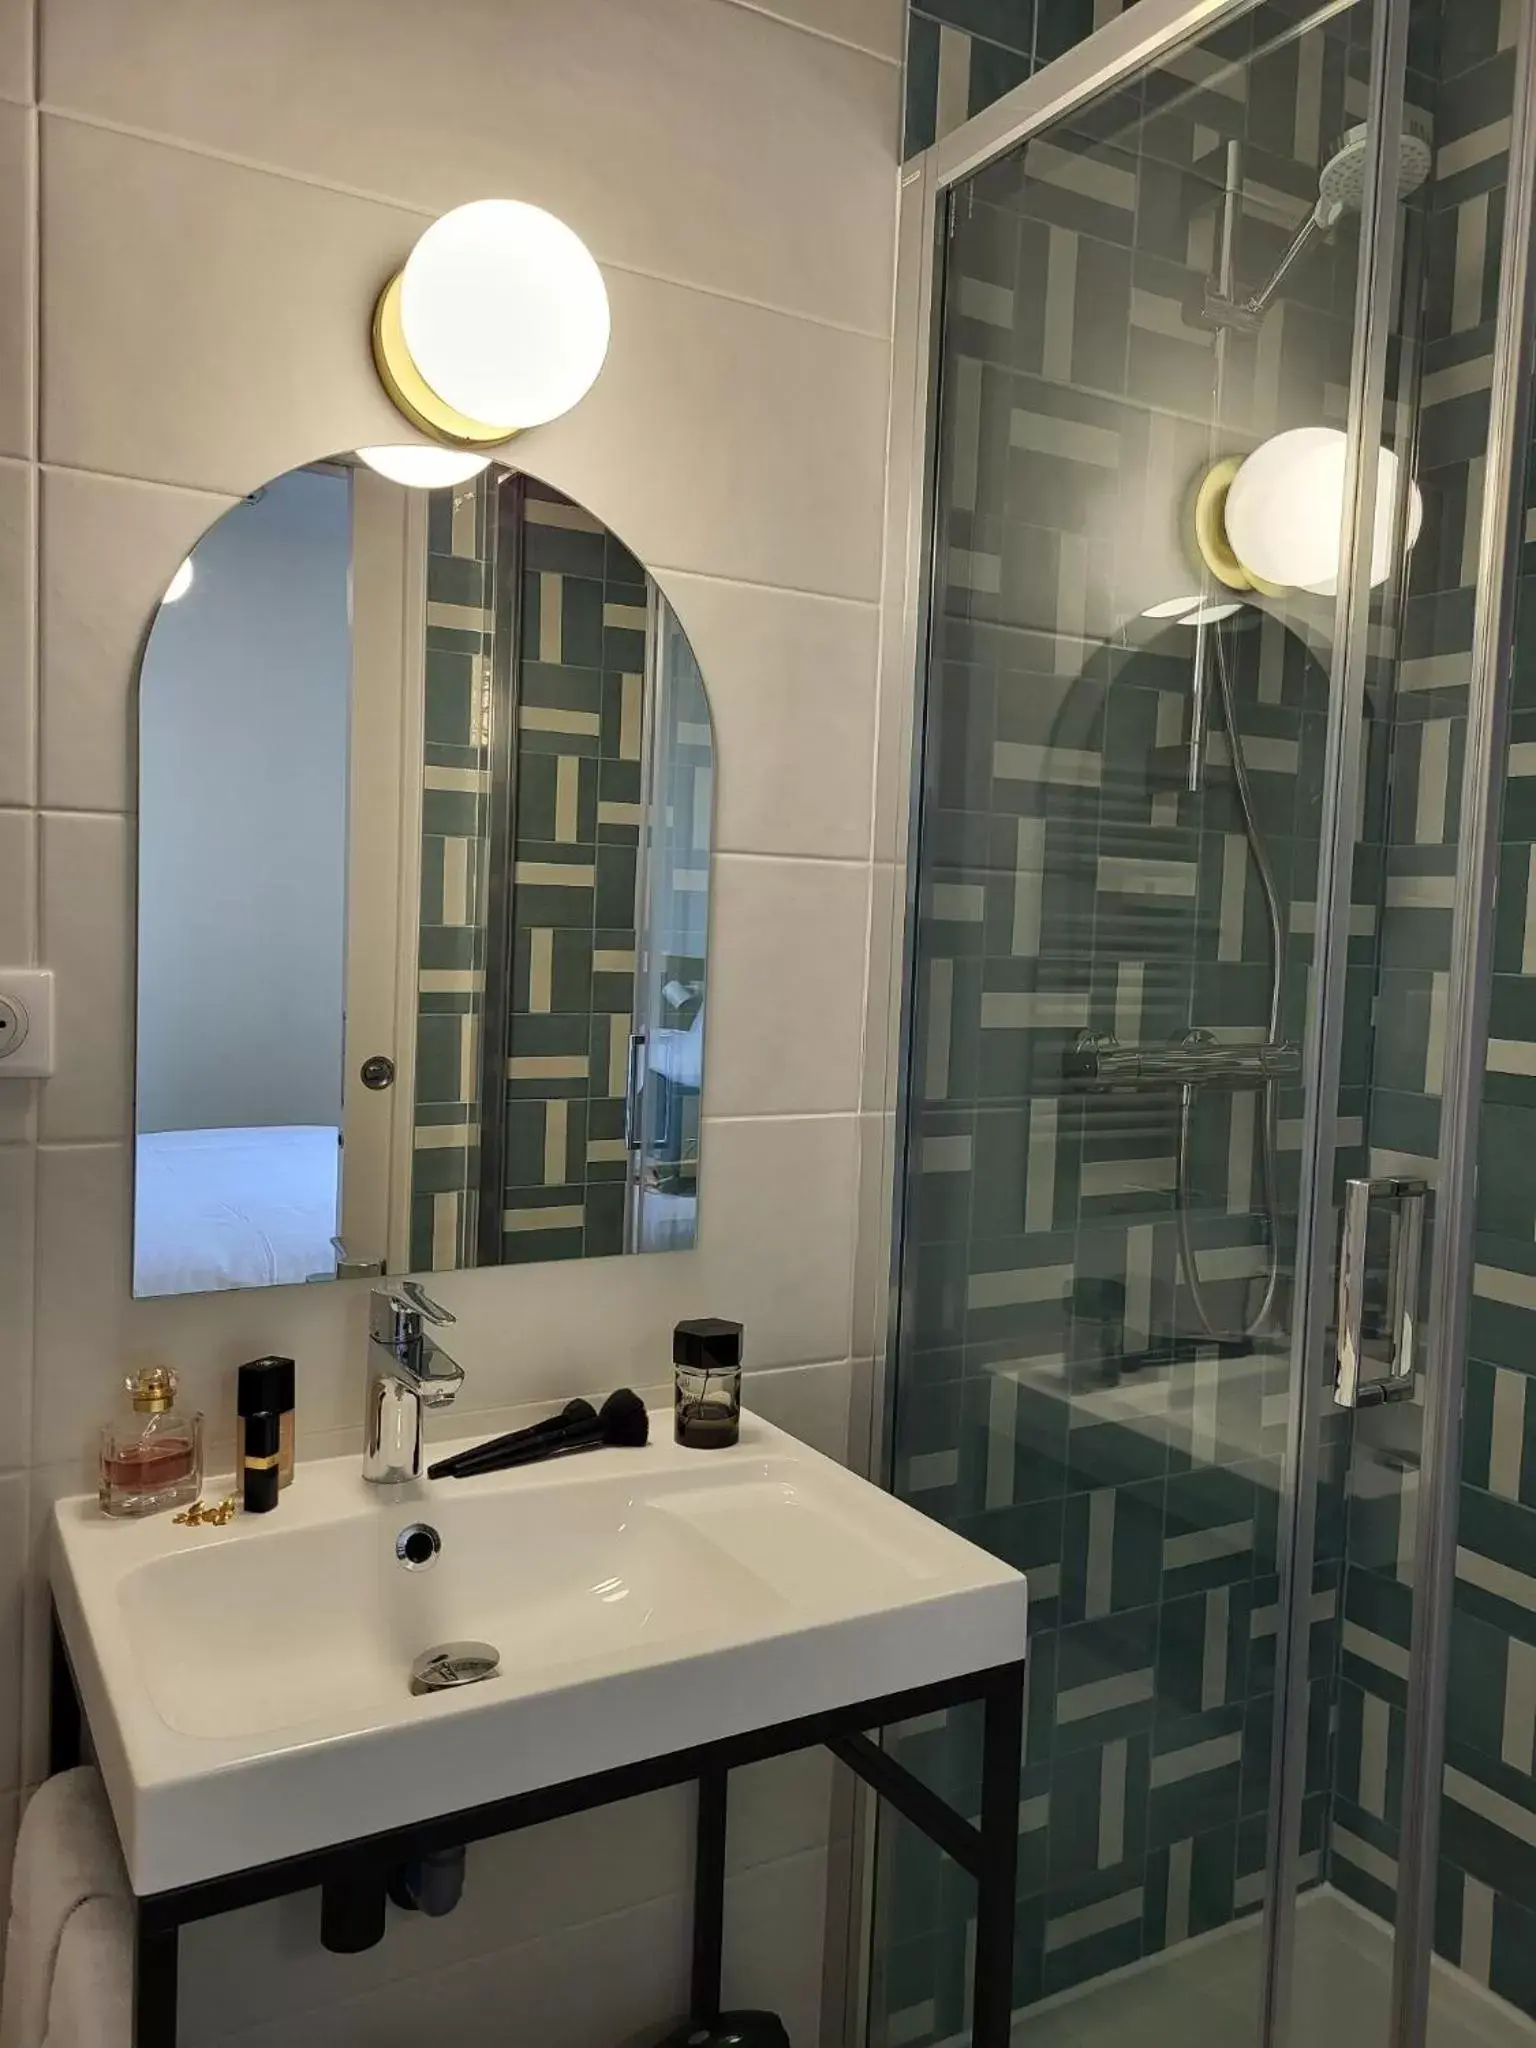 Bathroom in Mage hôtels - Hôtel la grenette - Brasserie Bonté Divine